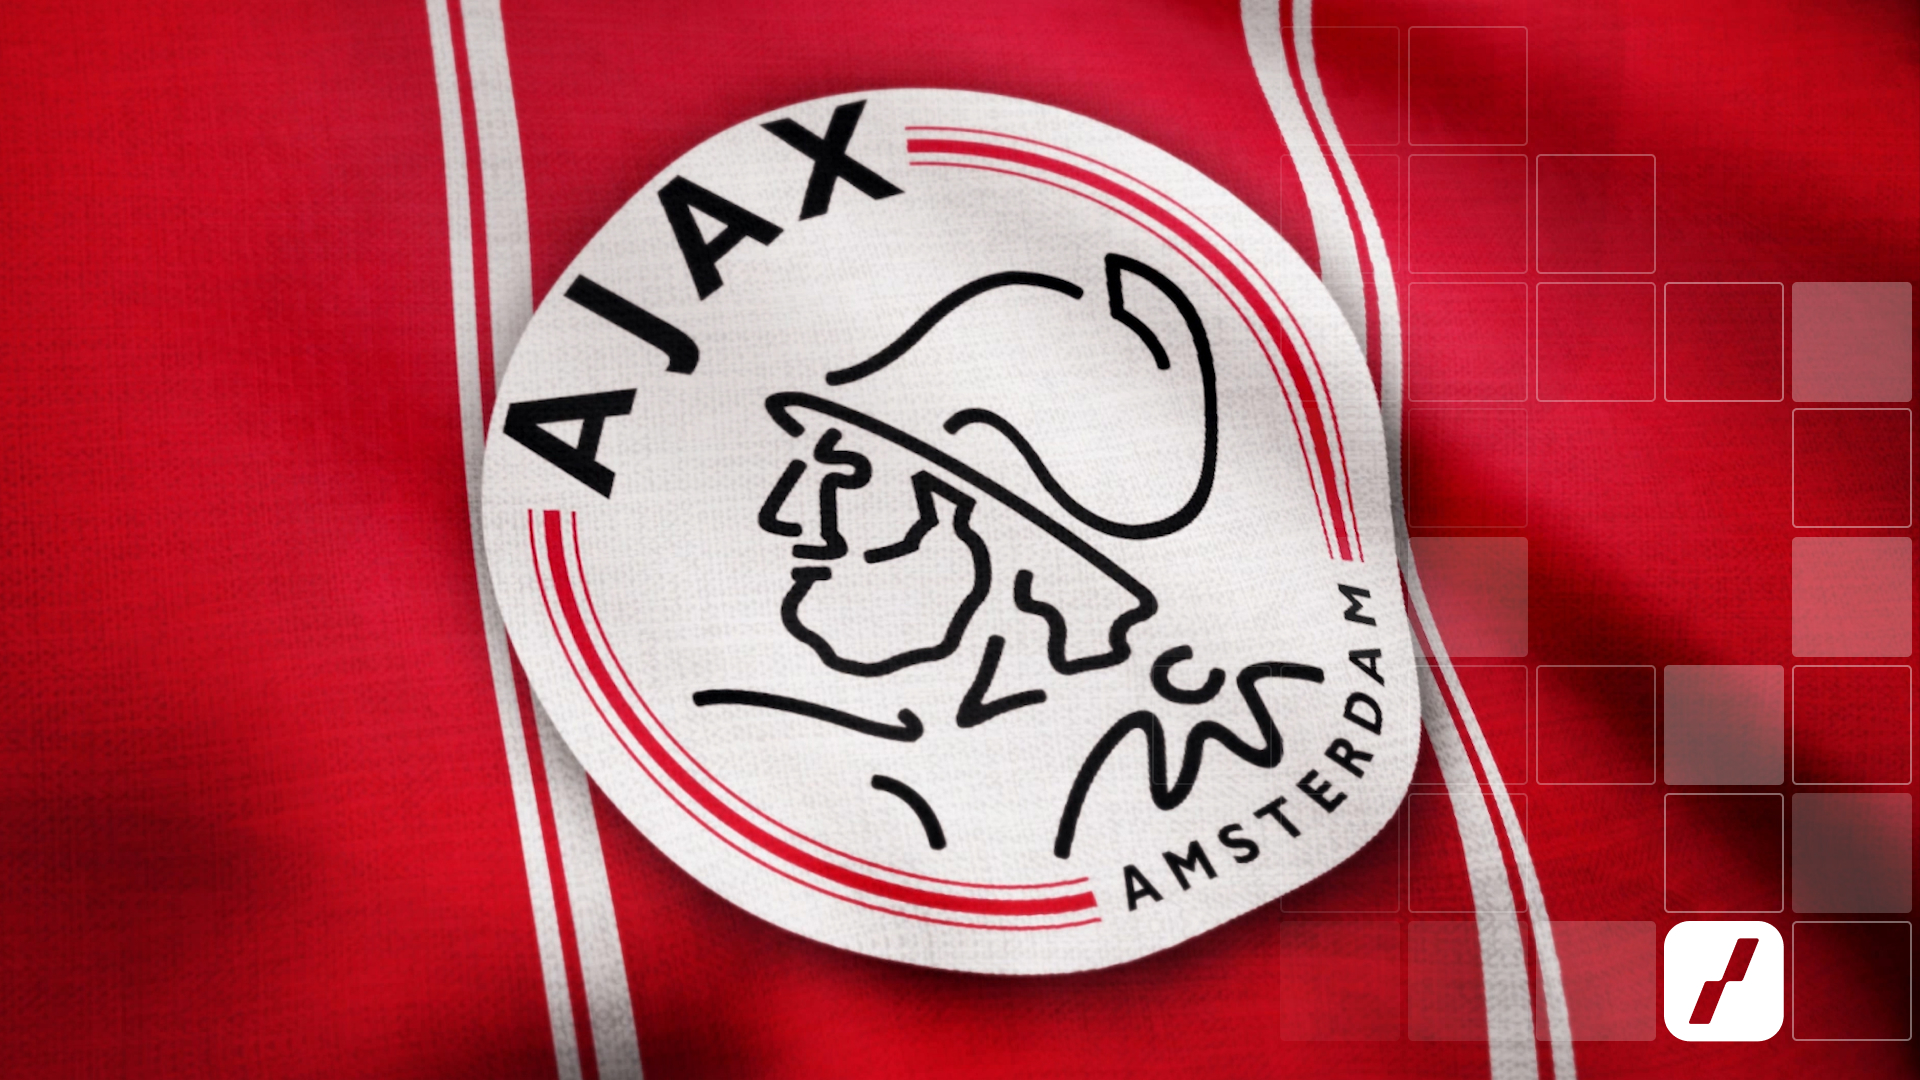 Aandeel Ajax | Alex Kroes | Handelen met voorkennis